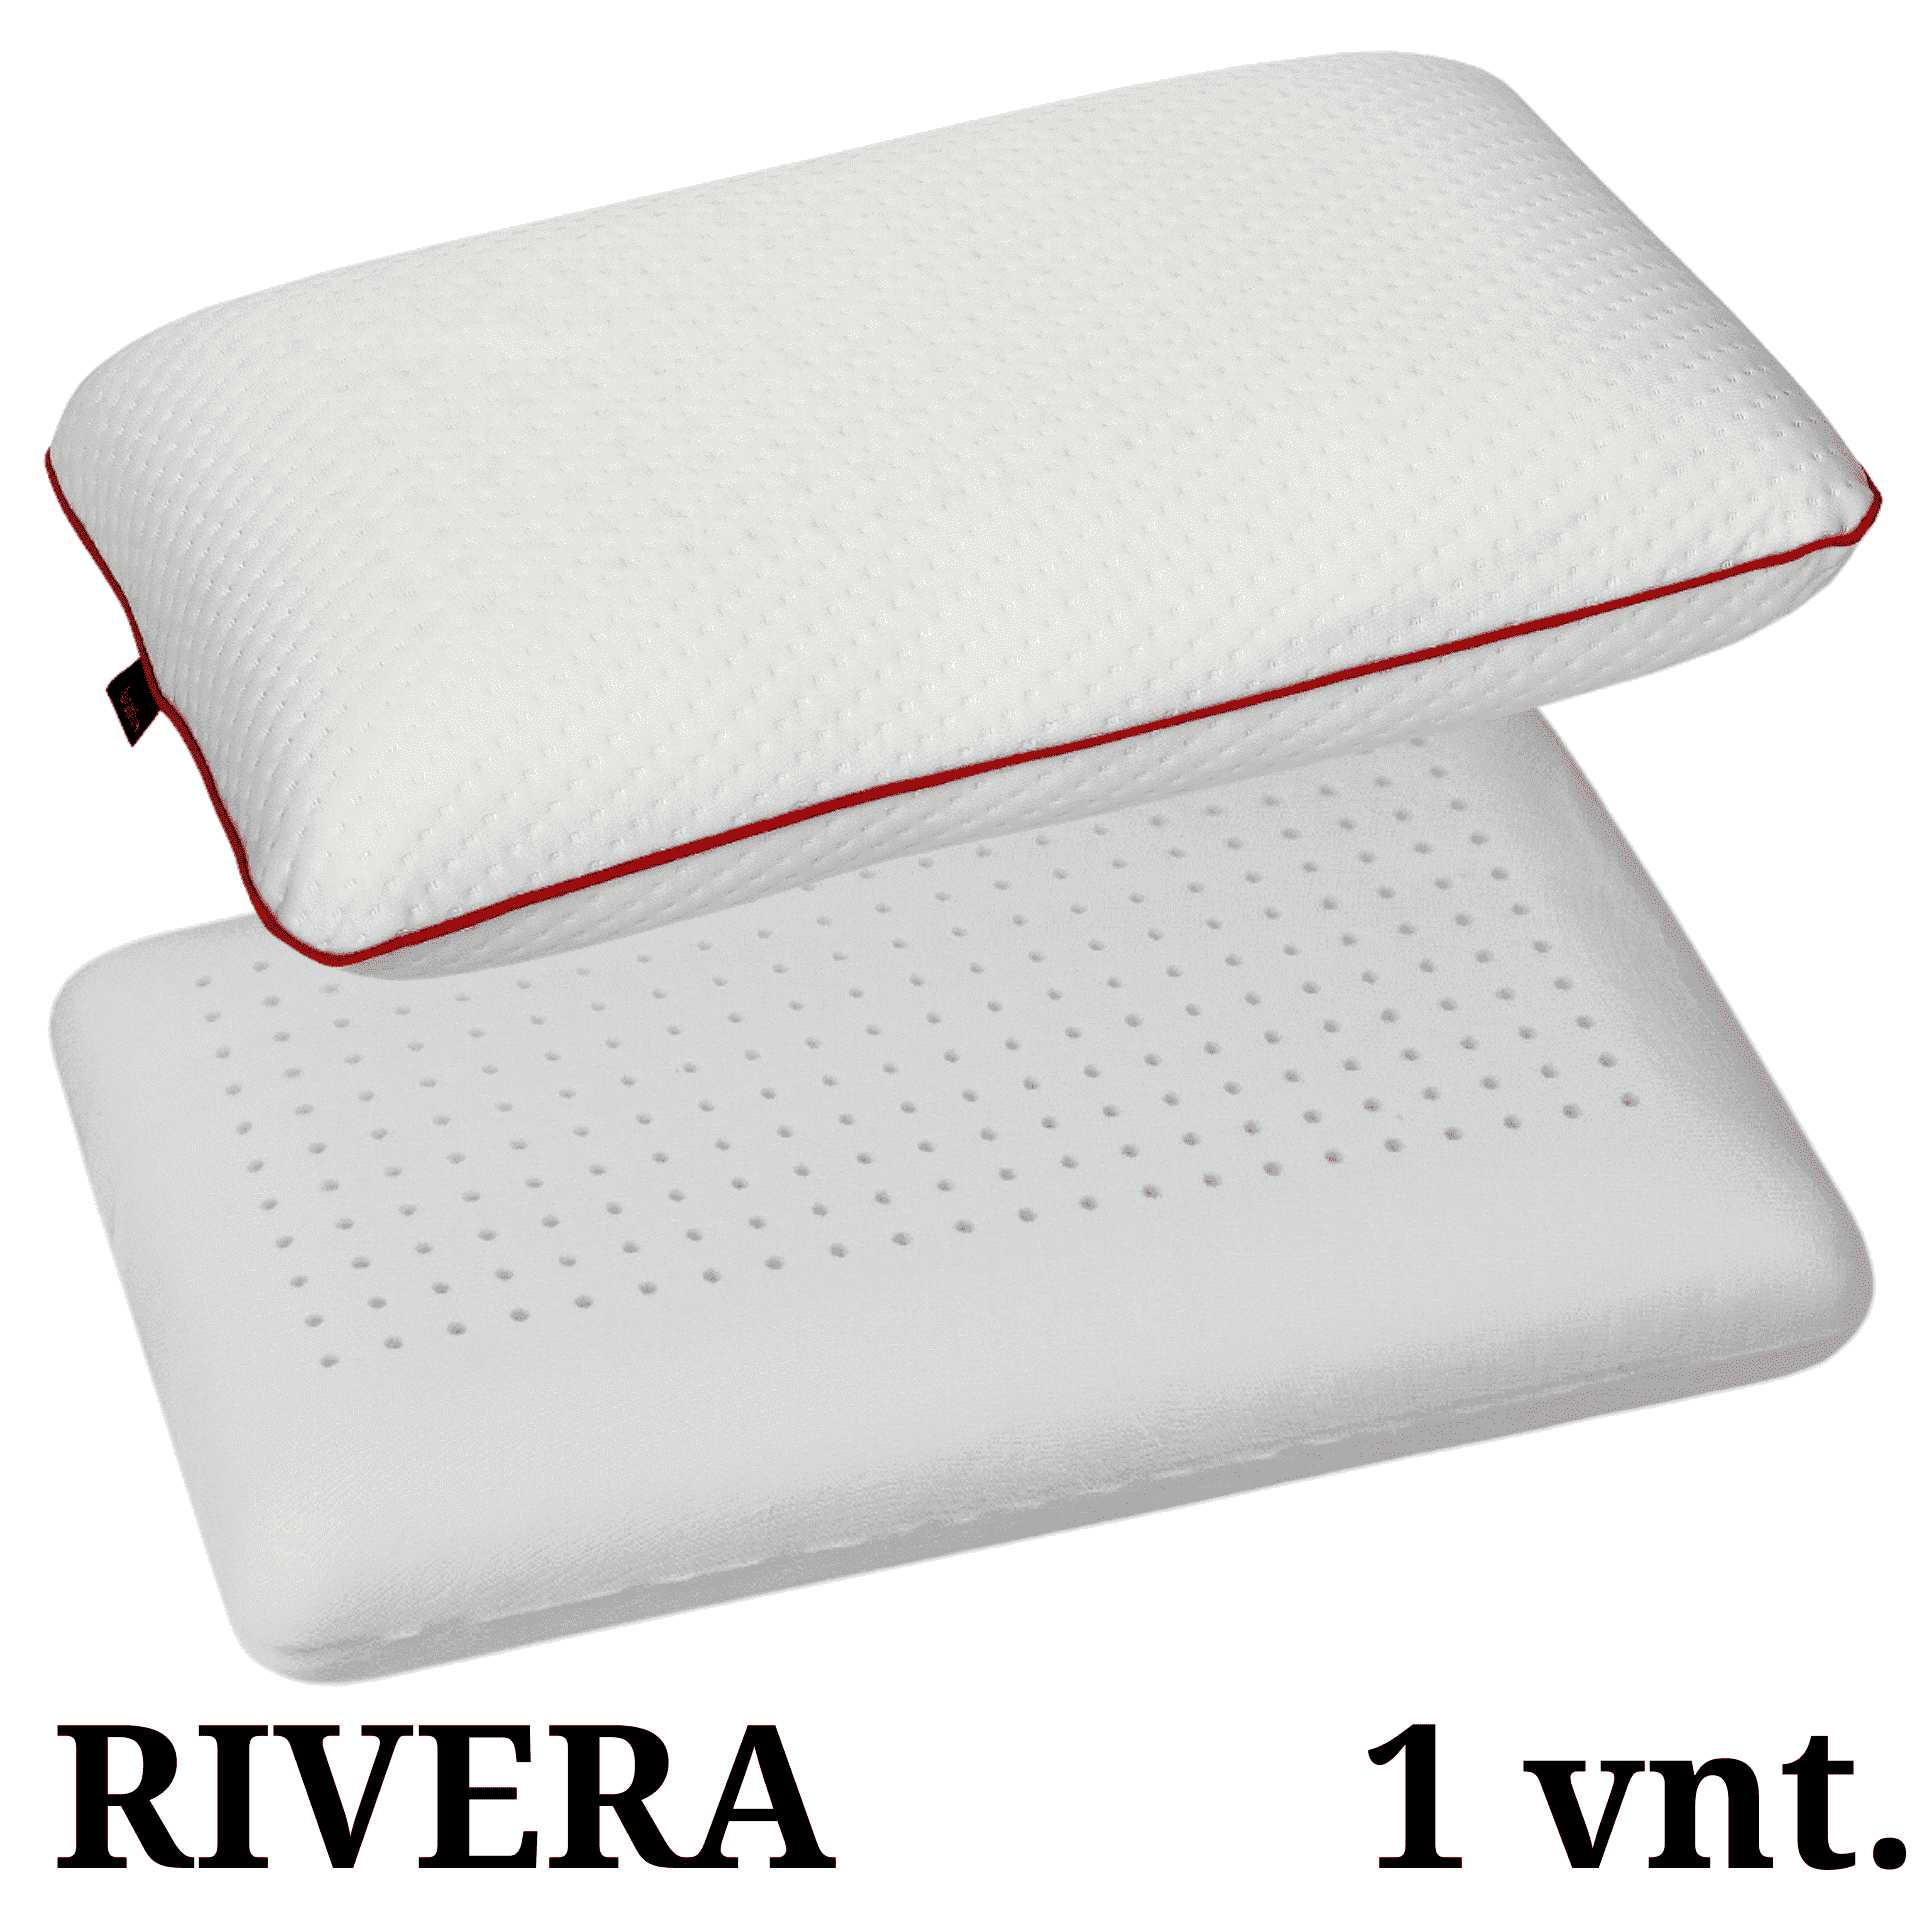 Pagalvė RIVERA 1 vnt. (70.00 €) 40x65x10 – klasikinės formos pagalvė, turinti ortopedinių savybių. Tai tobula atrama galvai, kaklui ir nugarai. Miego metu atsipalaiduoja įsitempę raumenys ir atslėgsta susikaupusi įtampa. Patogi, iš viskoelastinių putų poliuretano pagaminta pagalvė yra profilio skylutėmis, kas ją daro dar laidesnę orui ir reaguoja į kūno temperatūrą.